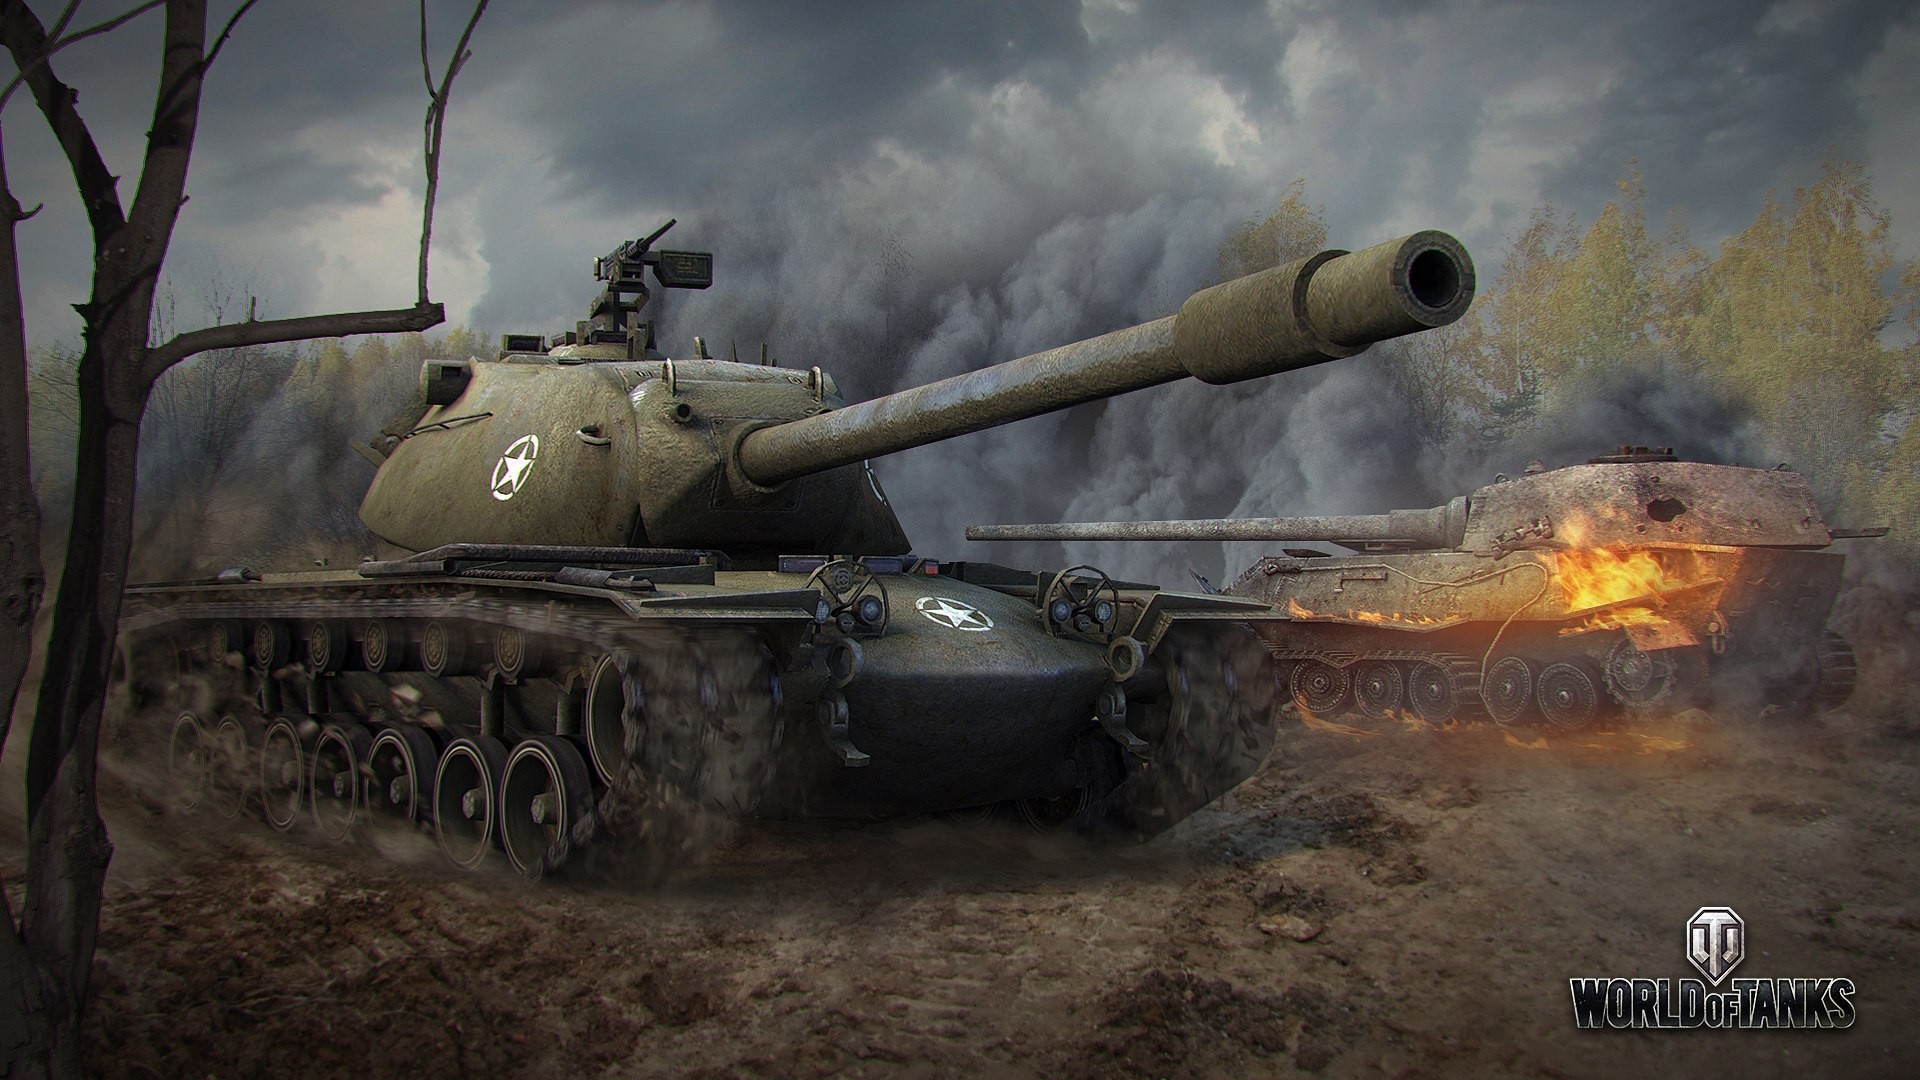 General 1920x1080 World of Tanks tank wargaming video games VK 72.01(K) M103 American tanks